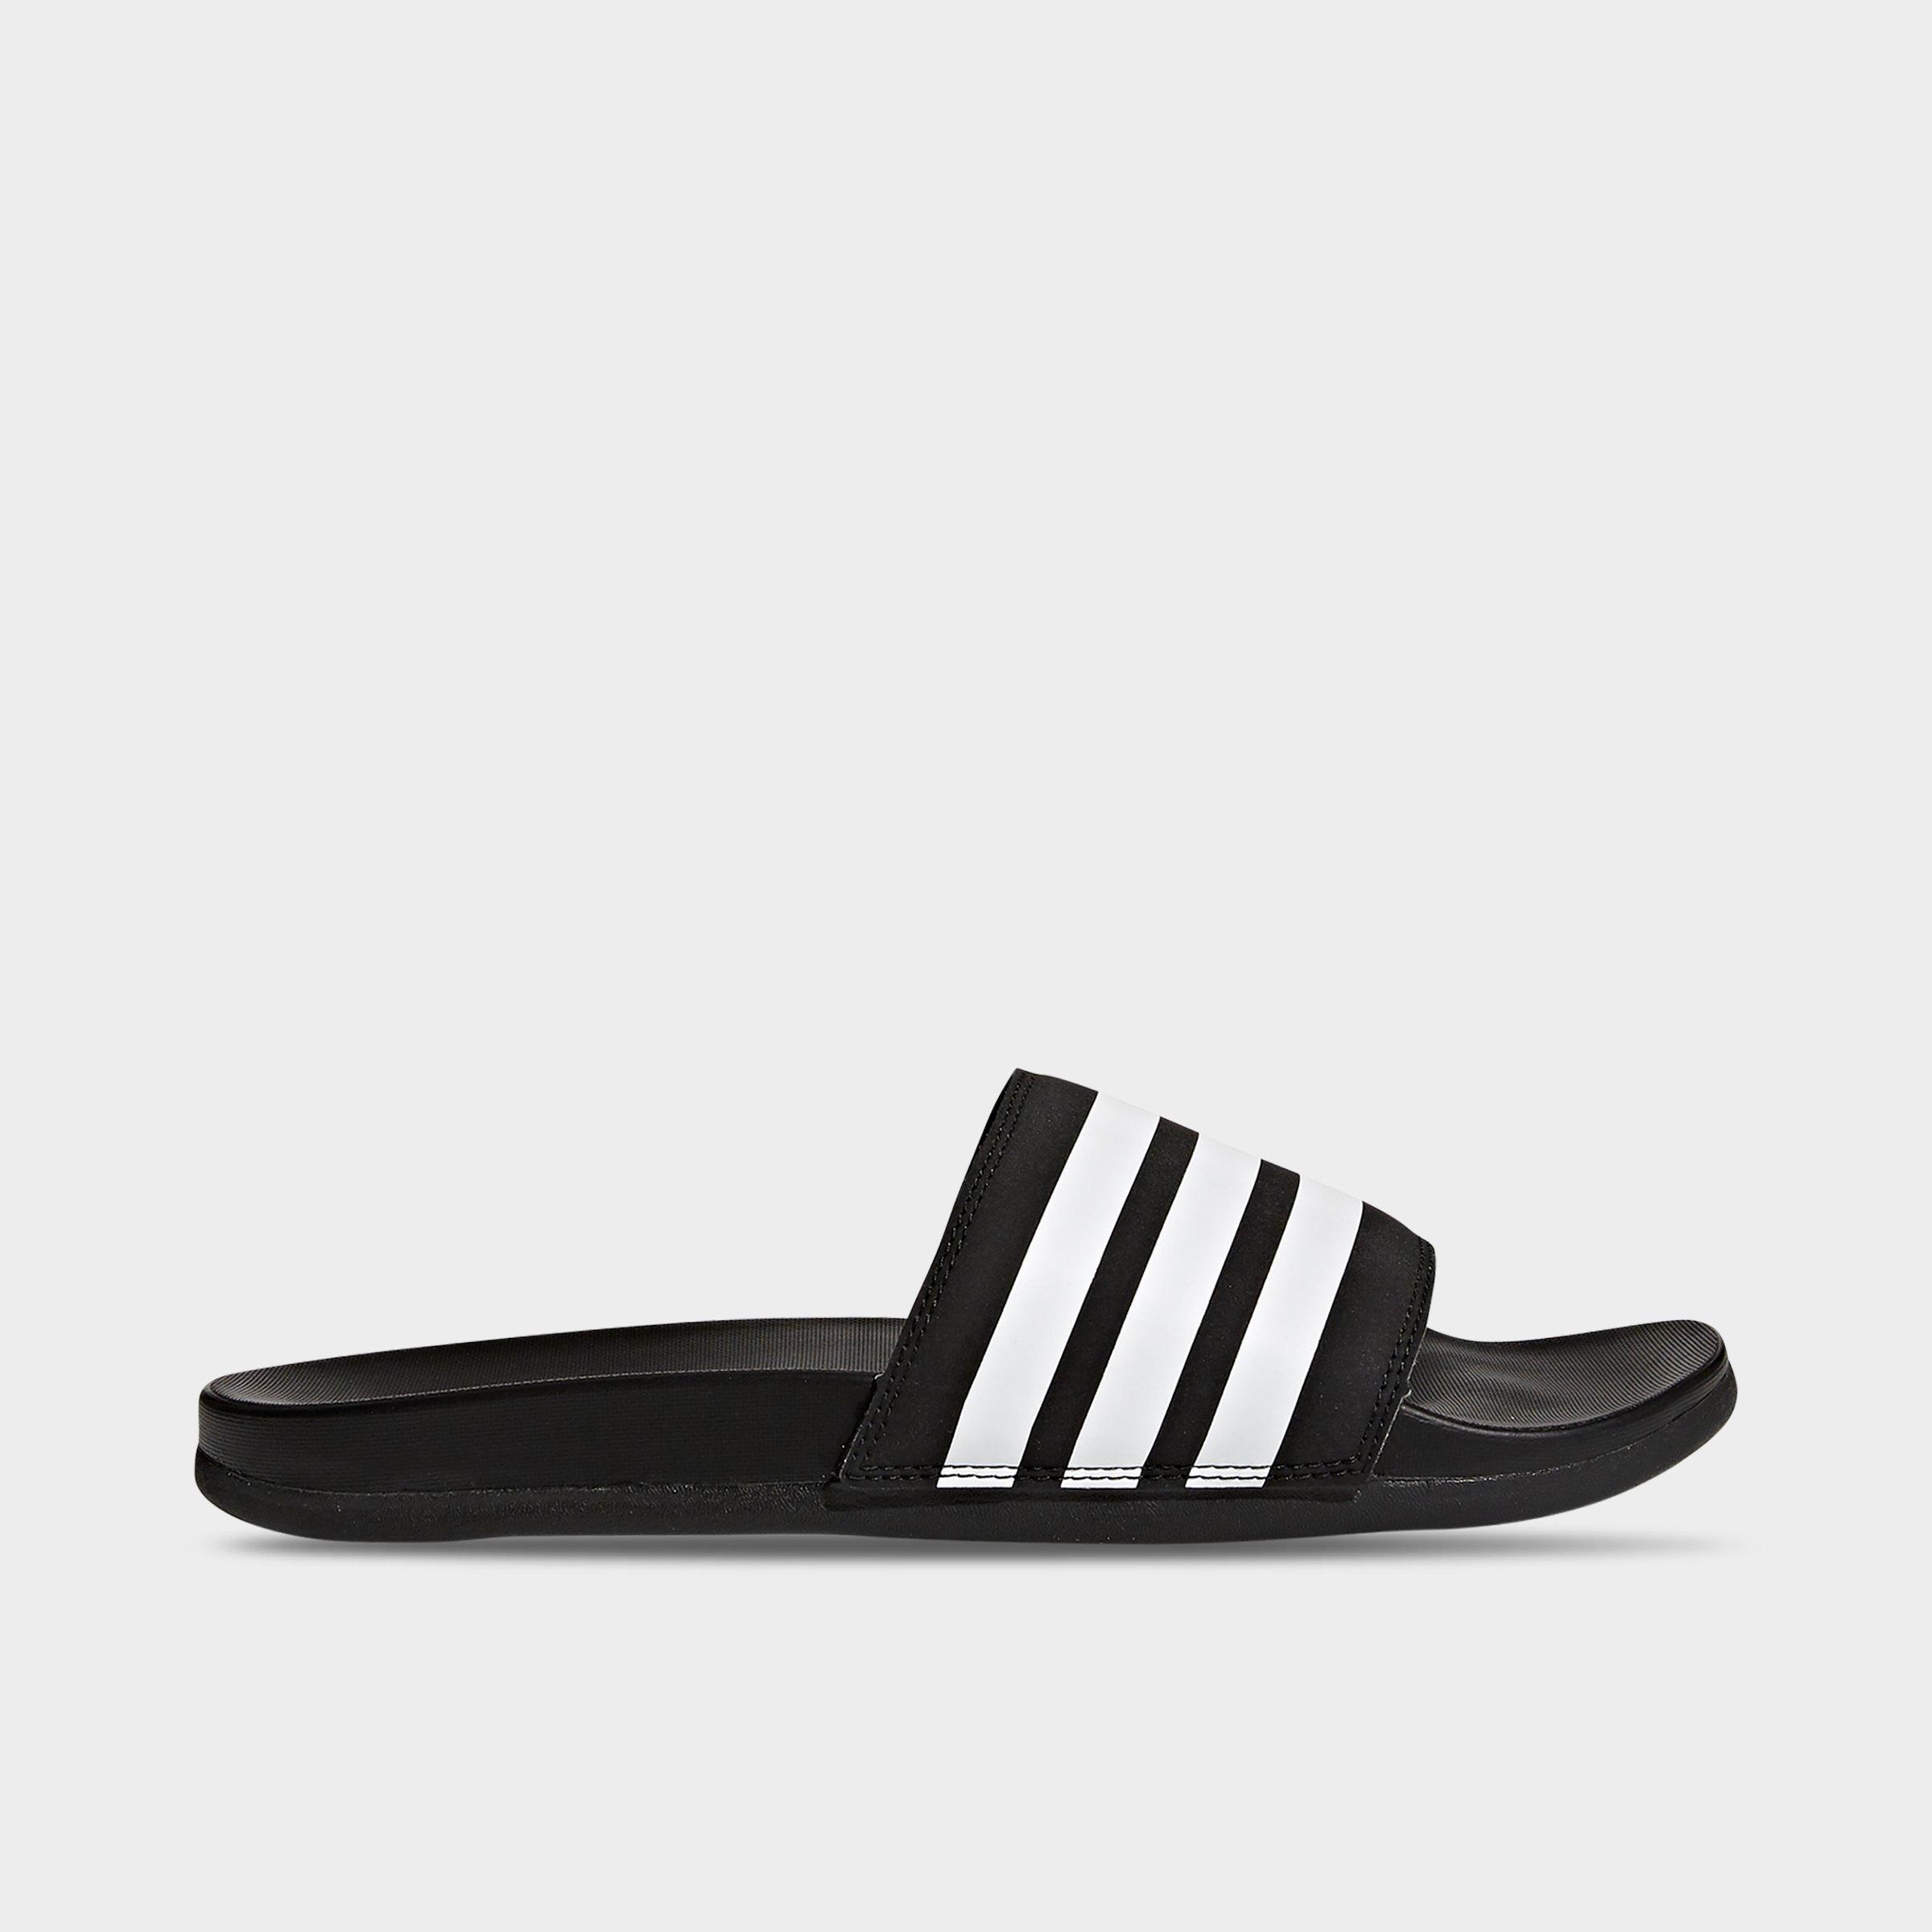 adidas adilette cloudfoam plus men's slide sandals